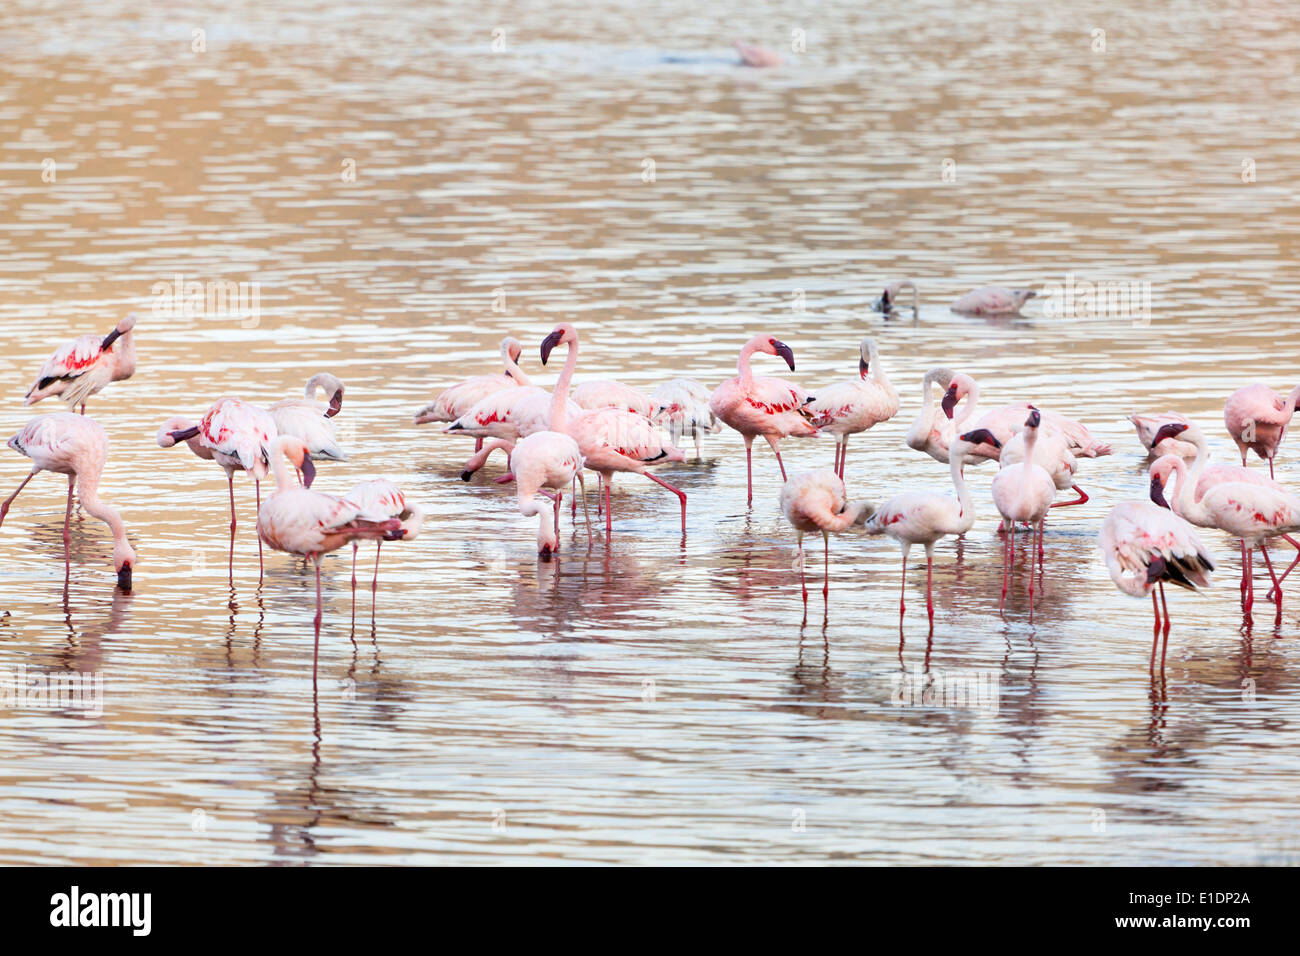 Flamingos standing in the water at Lake Bogoria in Kenya. Stock Photo